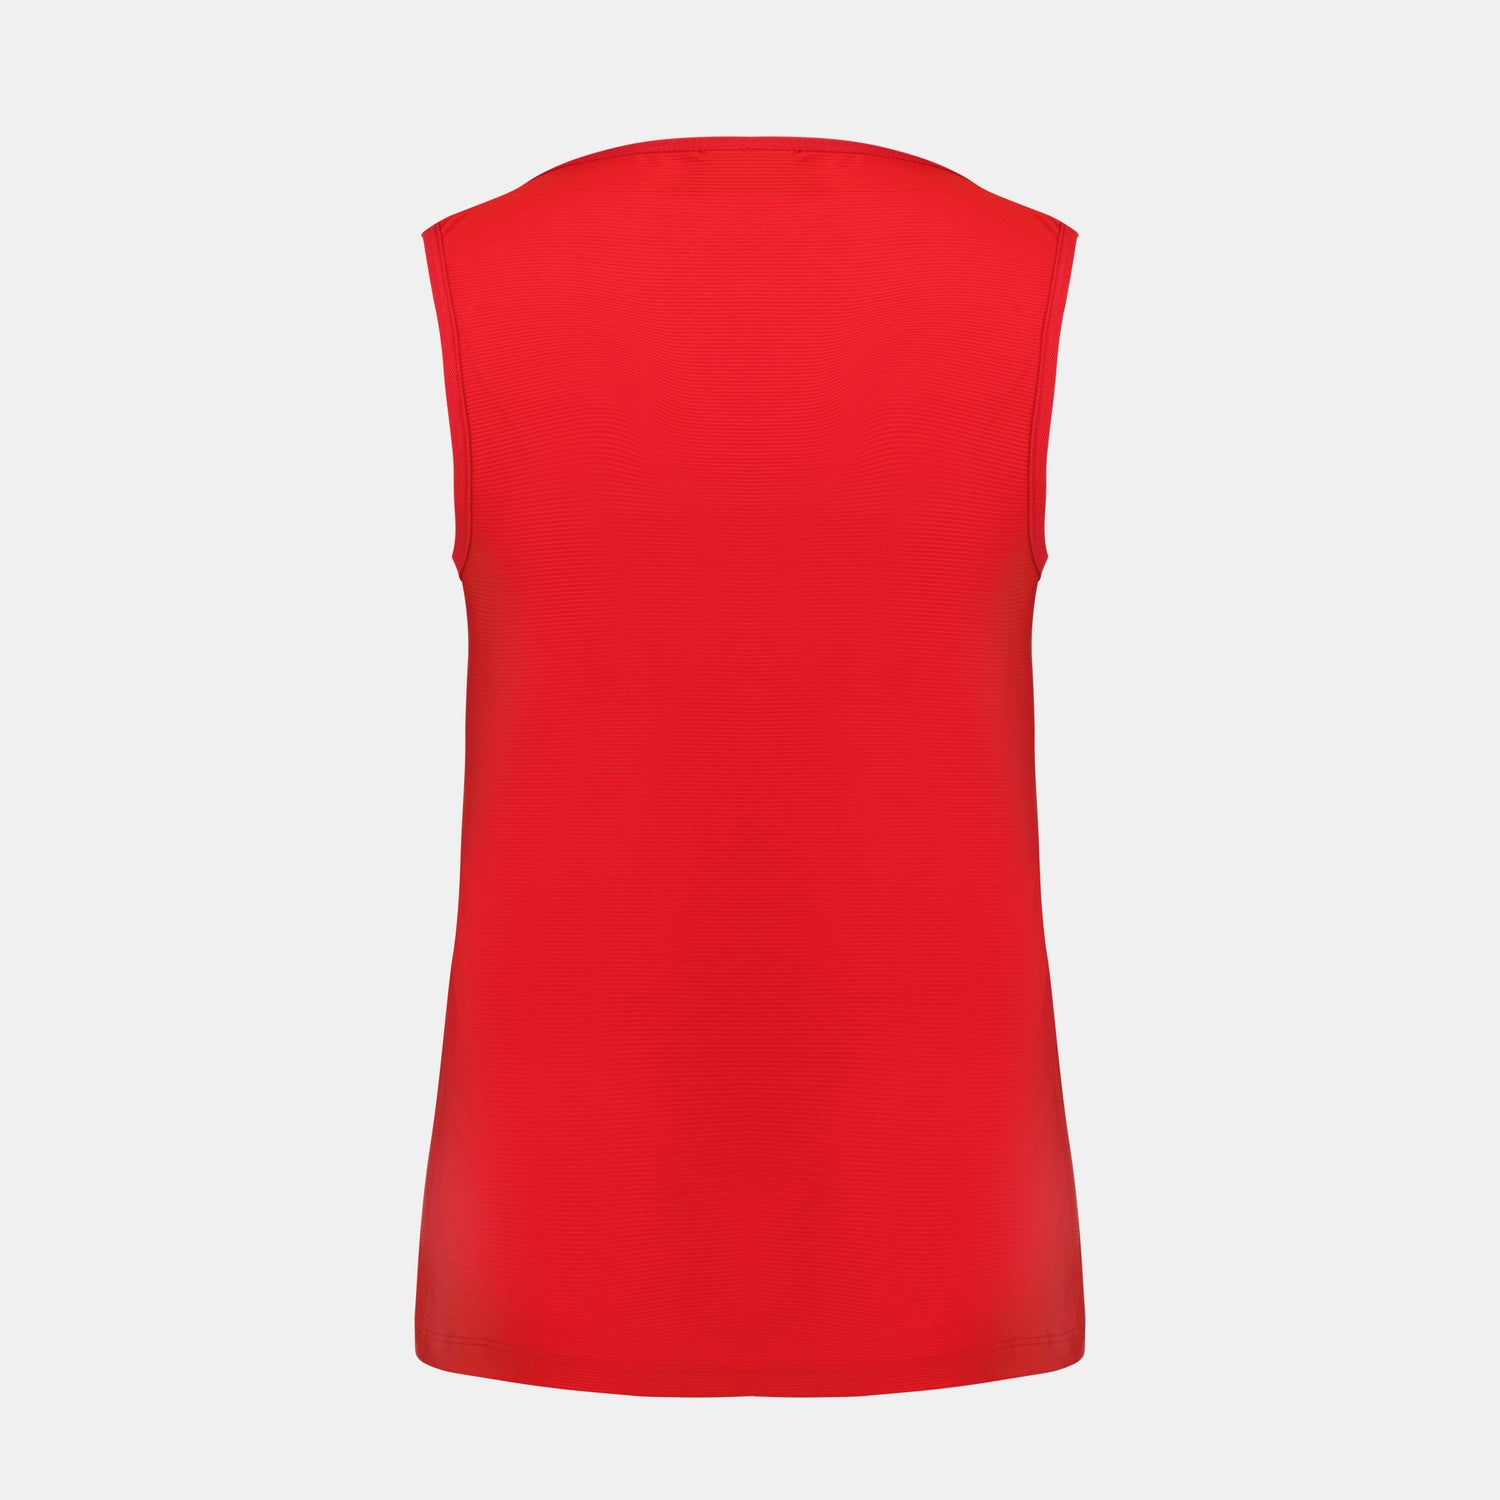 2320146-TENNIS Débardeur N°5 W pur rouge  | Camiseta Sin Mangas Mujer